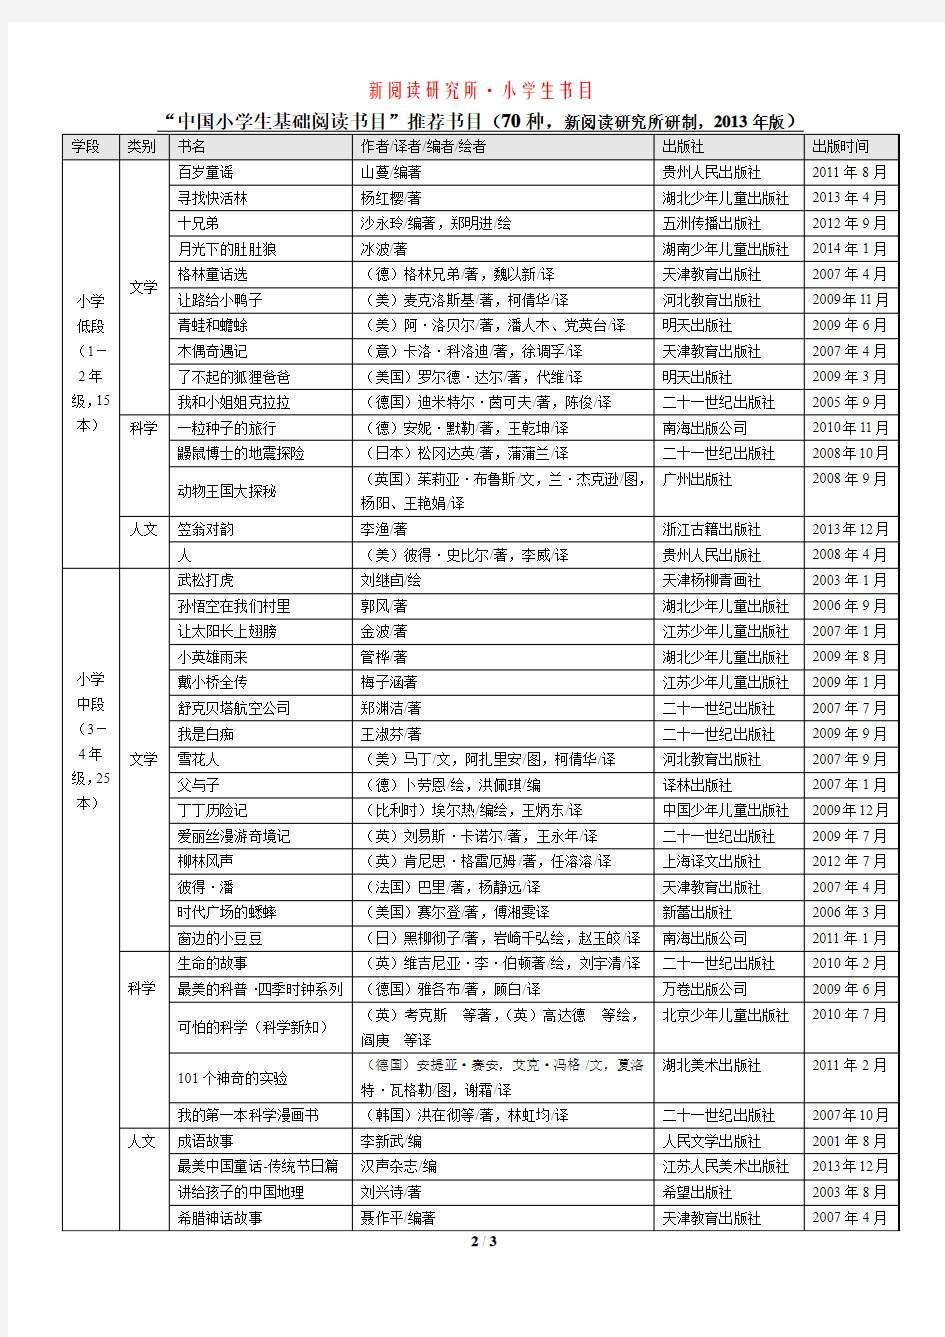 《中国小学生基础阅读书目表》 修订版(2013年)